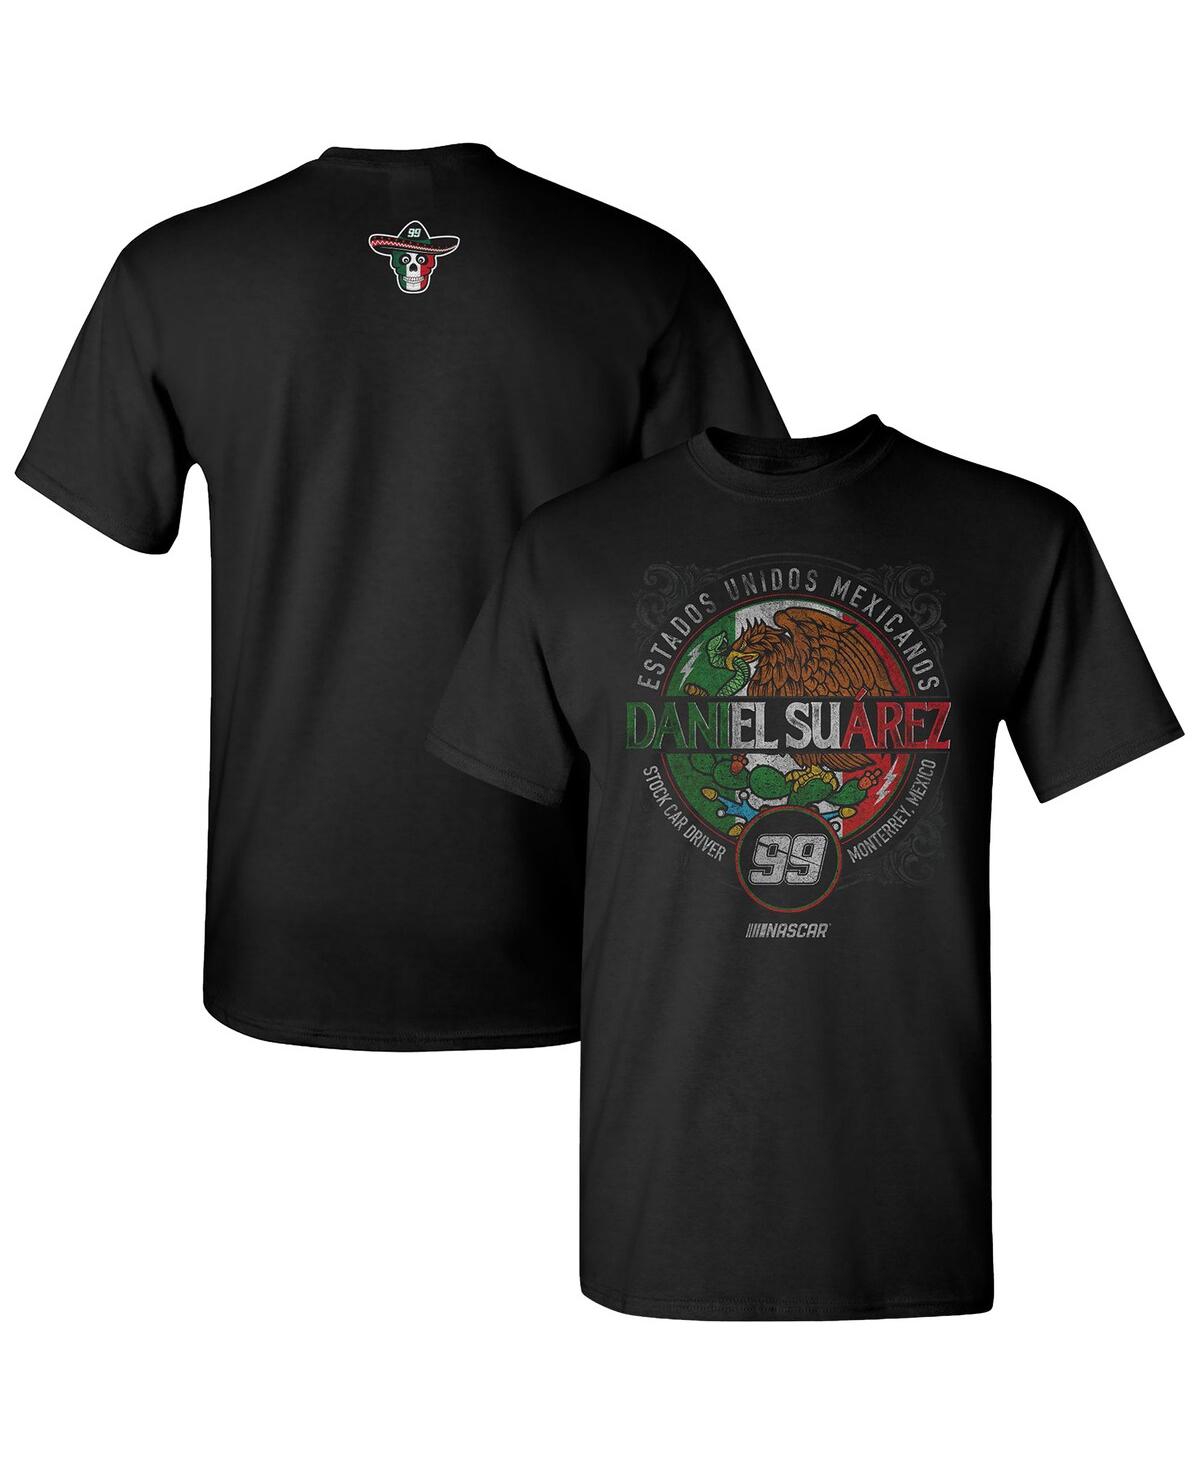 Shop Trackhouse Racing Team Collection Men's  Black Daniel Suarez Pancho T-shirt